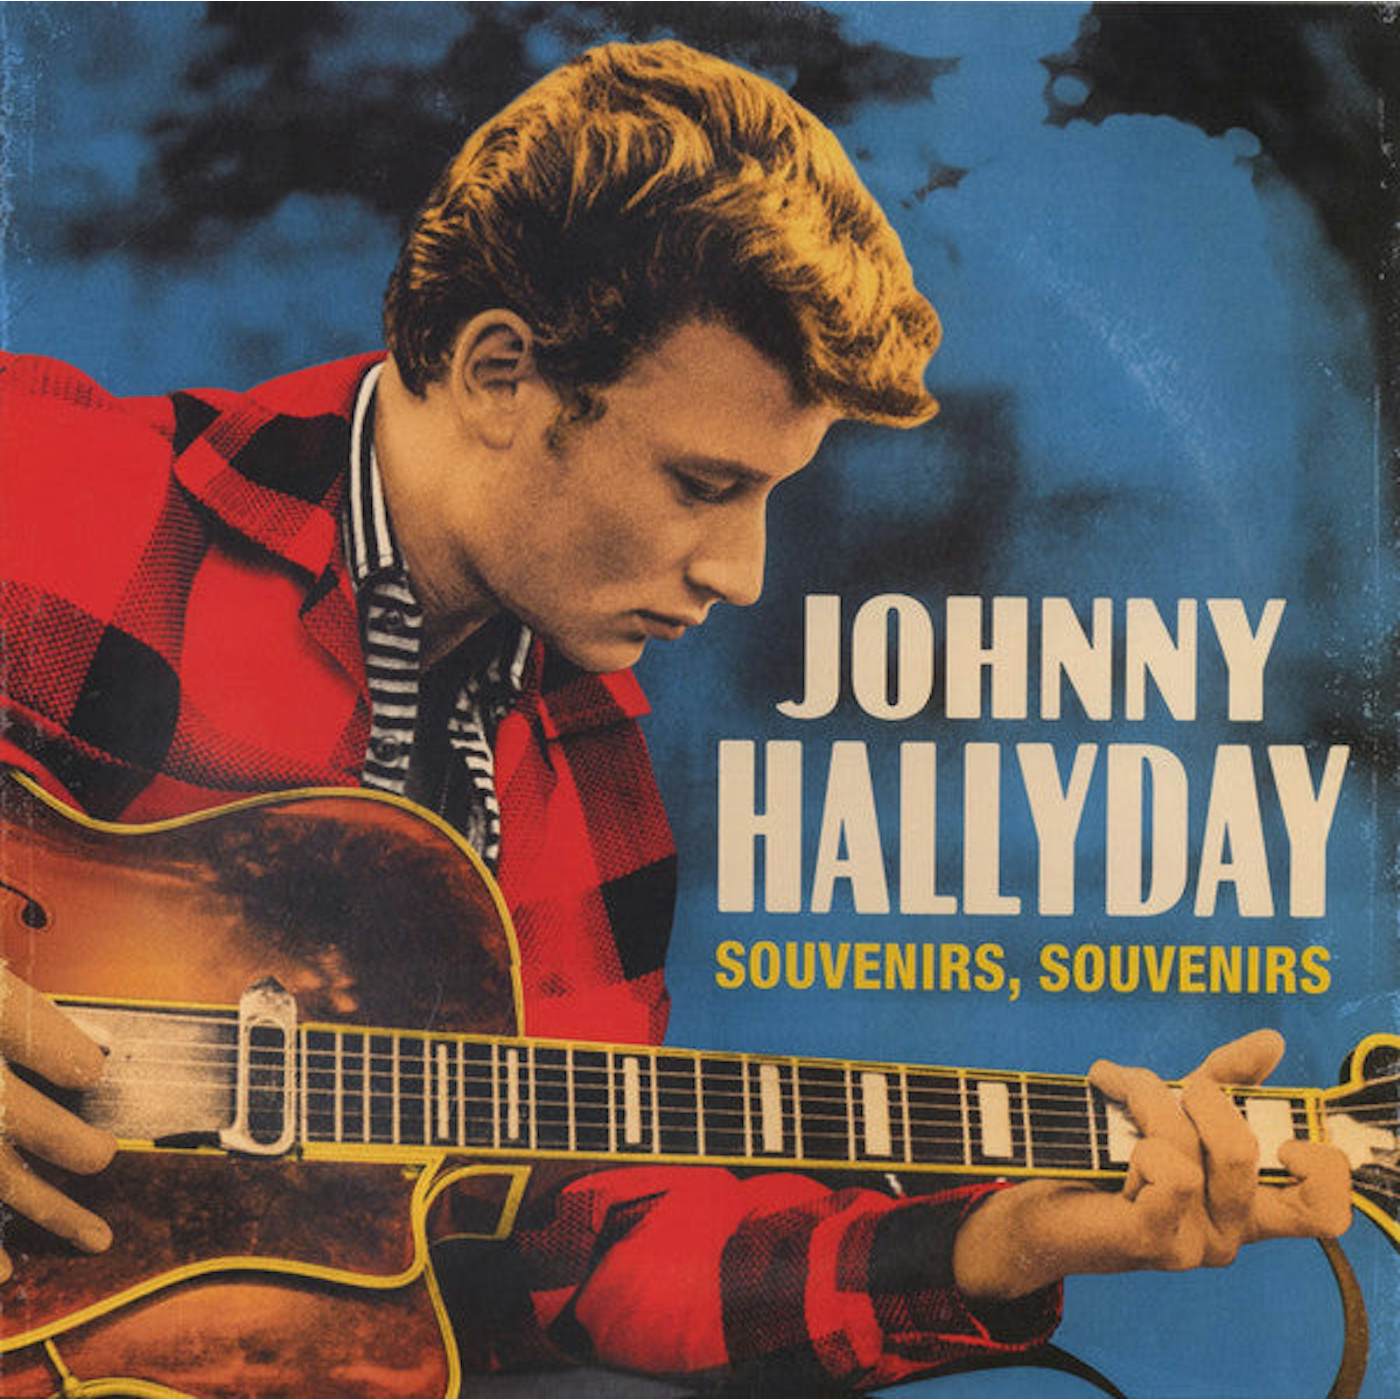 A La Vie, A La Mort by Johnny Hallyday (CD, 2002) 44006340623